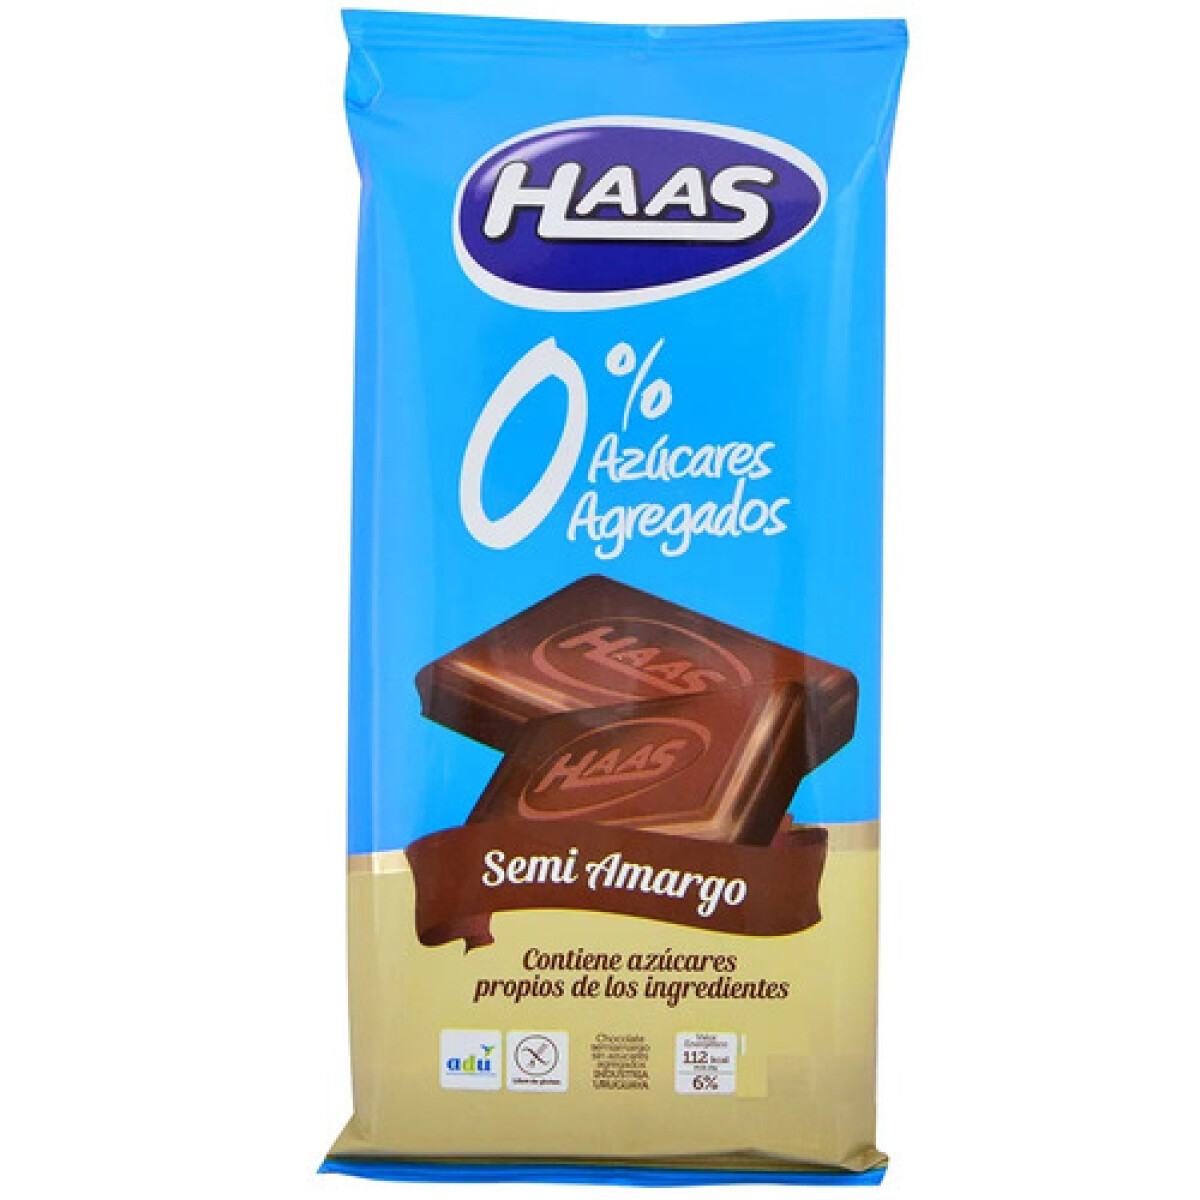 Chocolate Semi - Amargo Haas 0% Azúcar 70 Grs. 